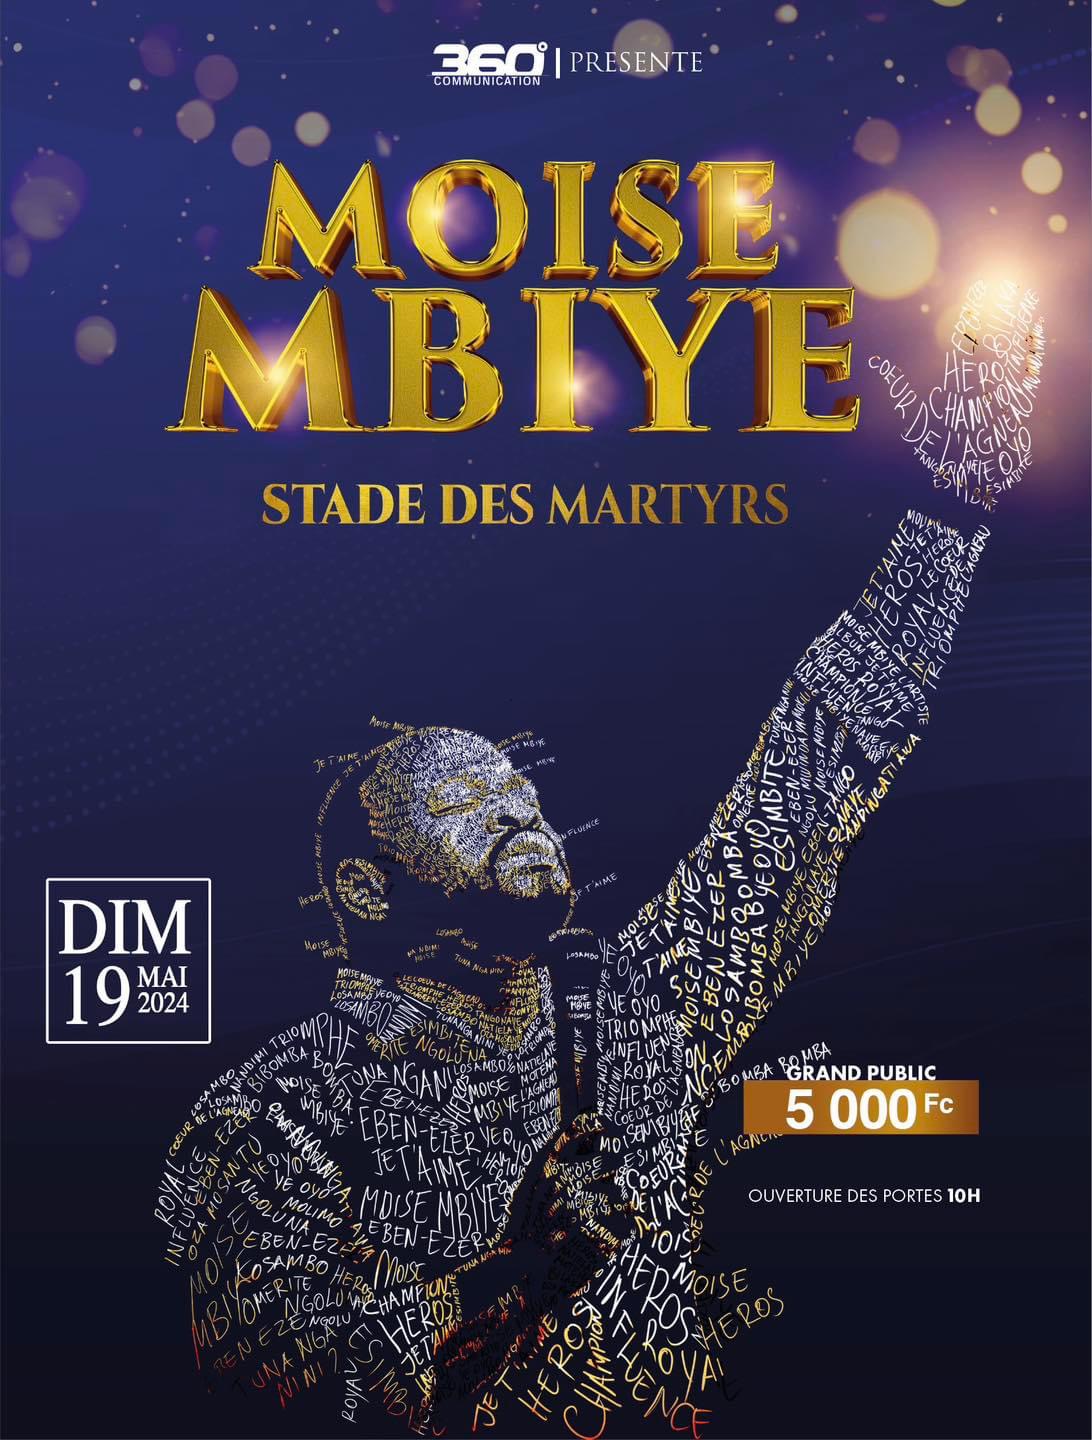 Moïse Mbiye invite les chômeurs à son concert du 19 mai au Stade des Martyrs/ DR